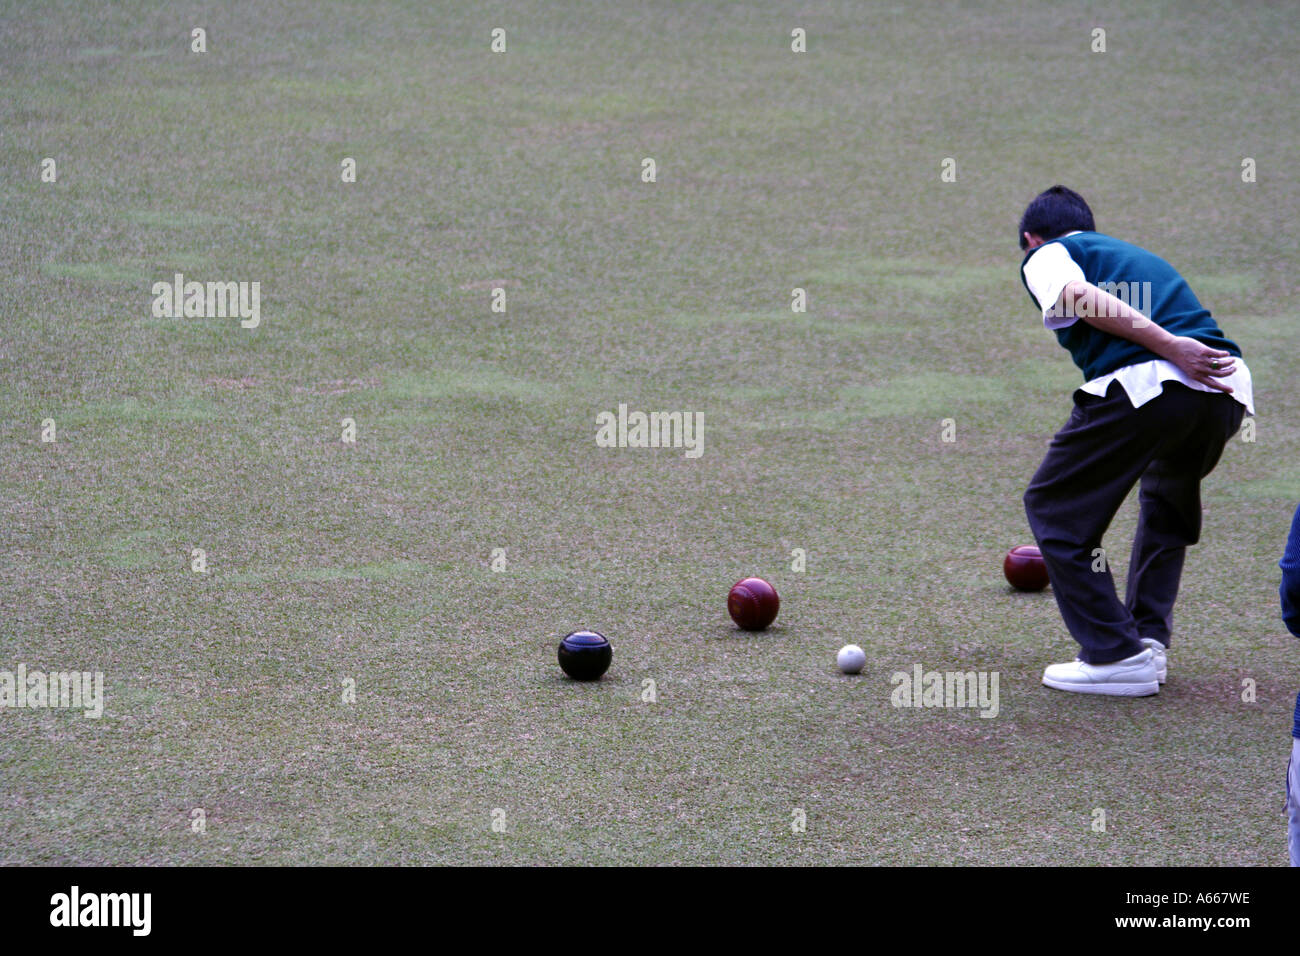 Bocce, lawn bowling at the Craigengower Cricket Club in Hong Kong, China Stock Photo